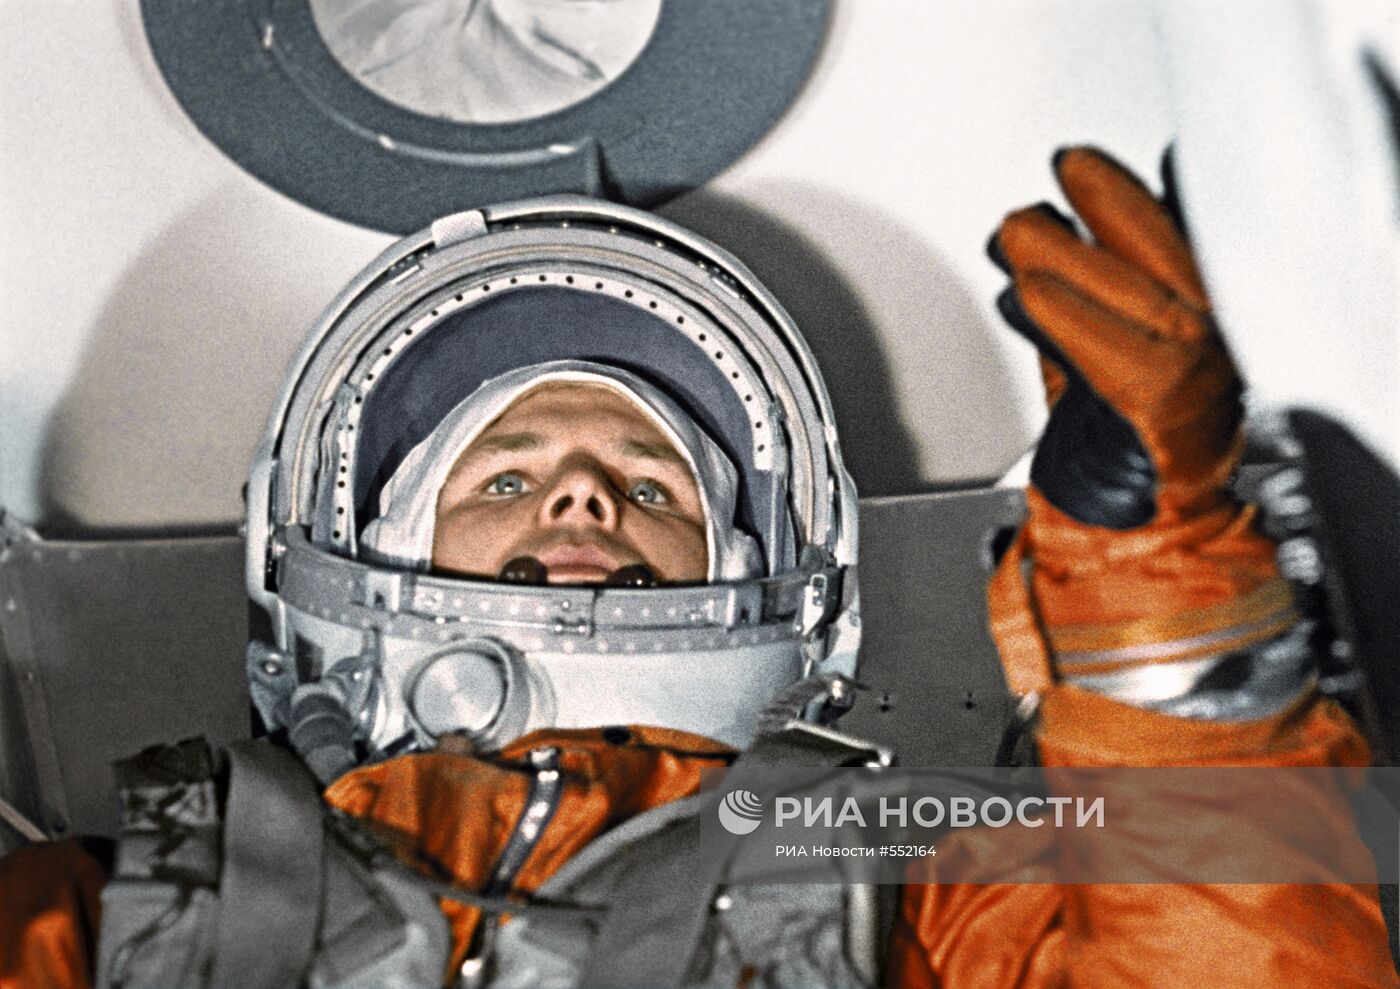 Юрий Гагарин в кабине космического корабля "Восток-1"